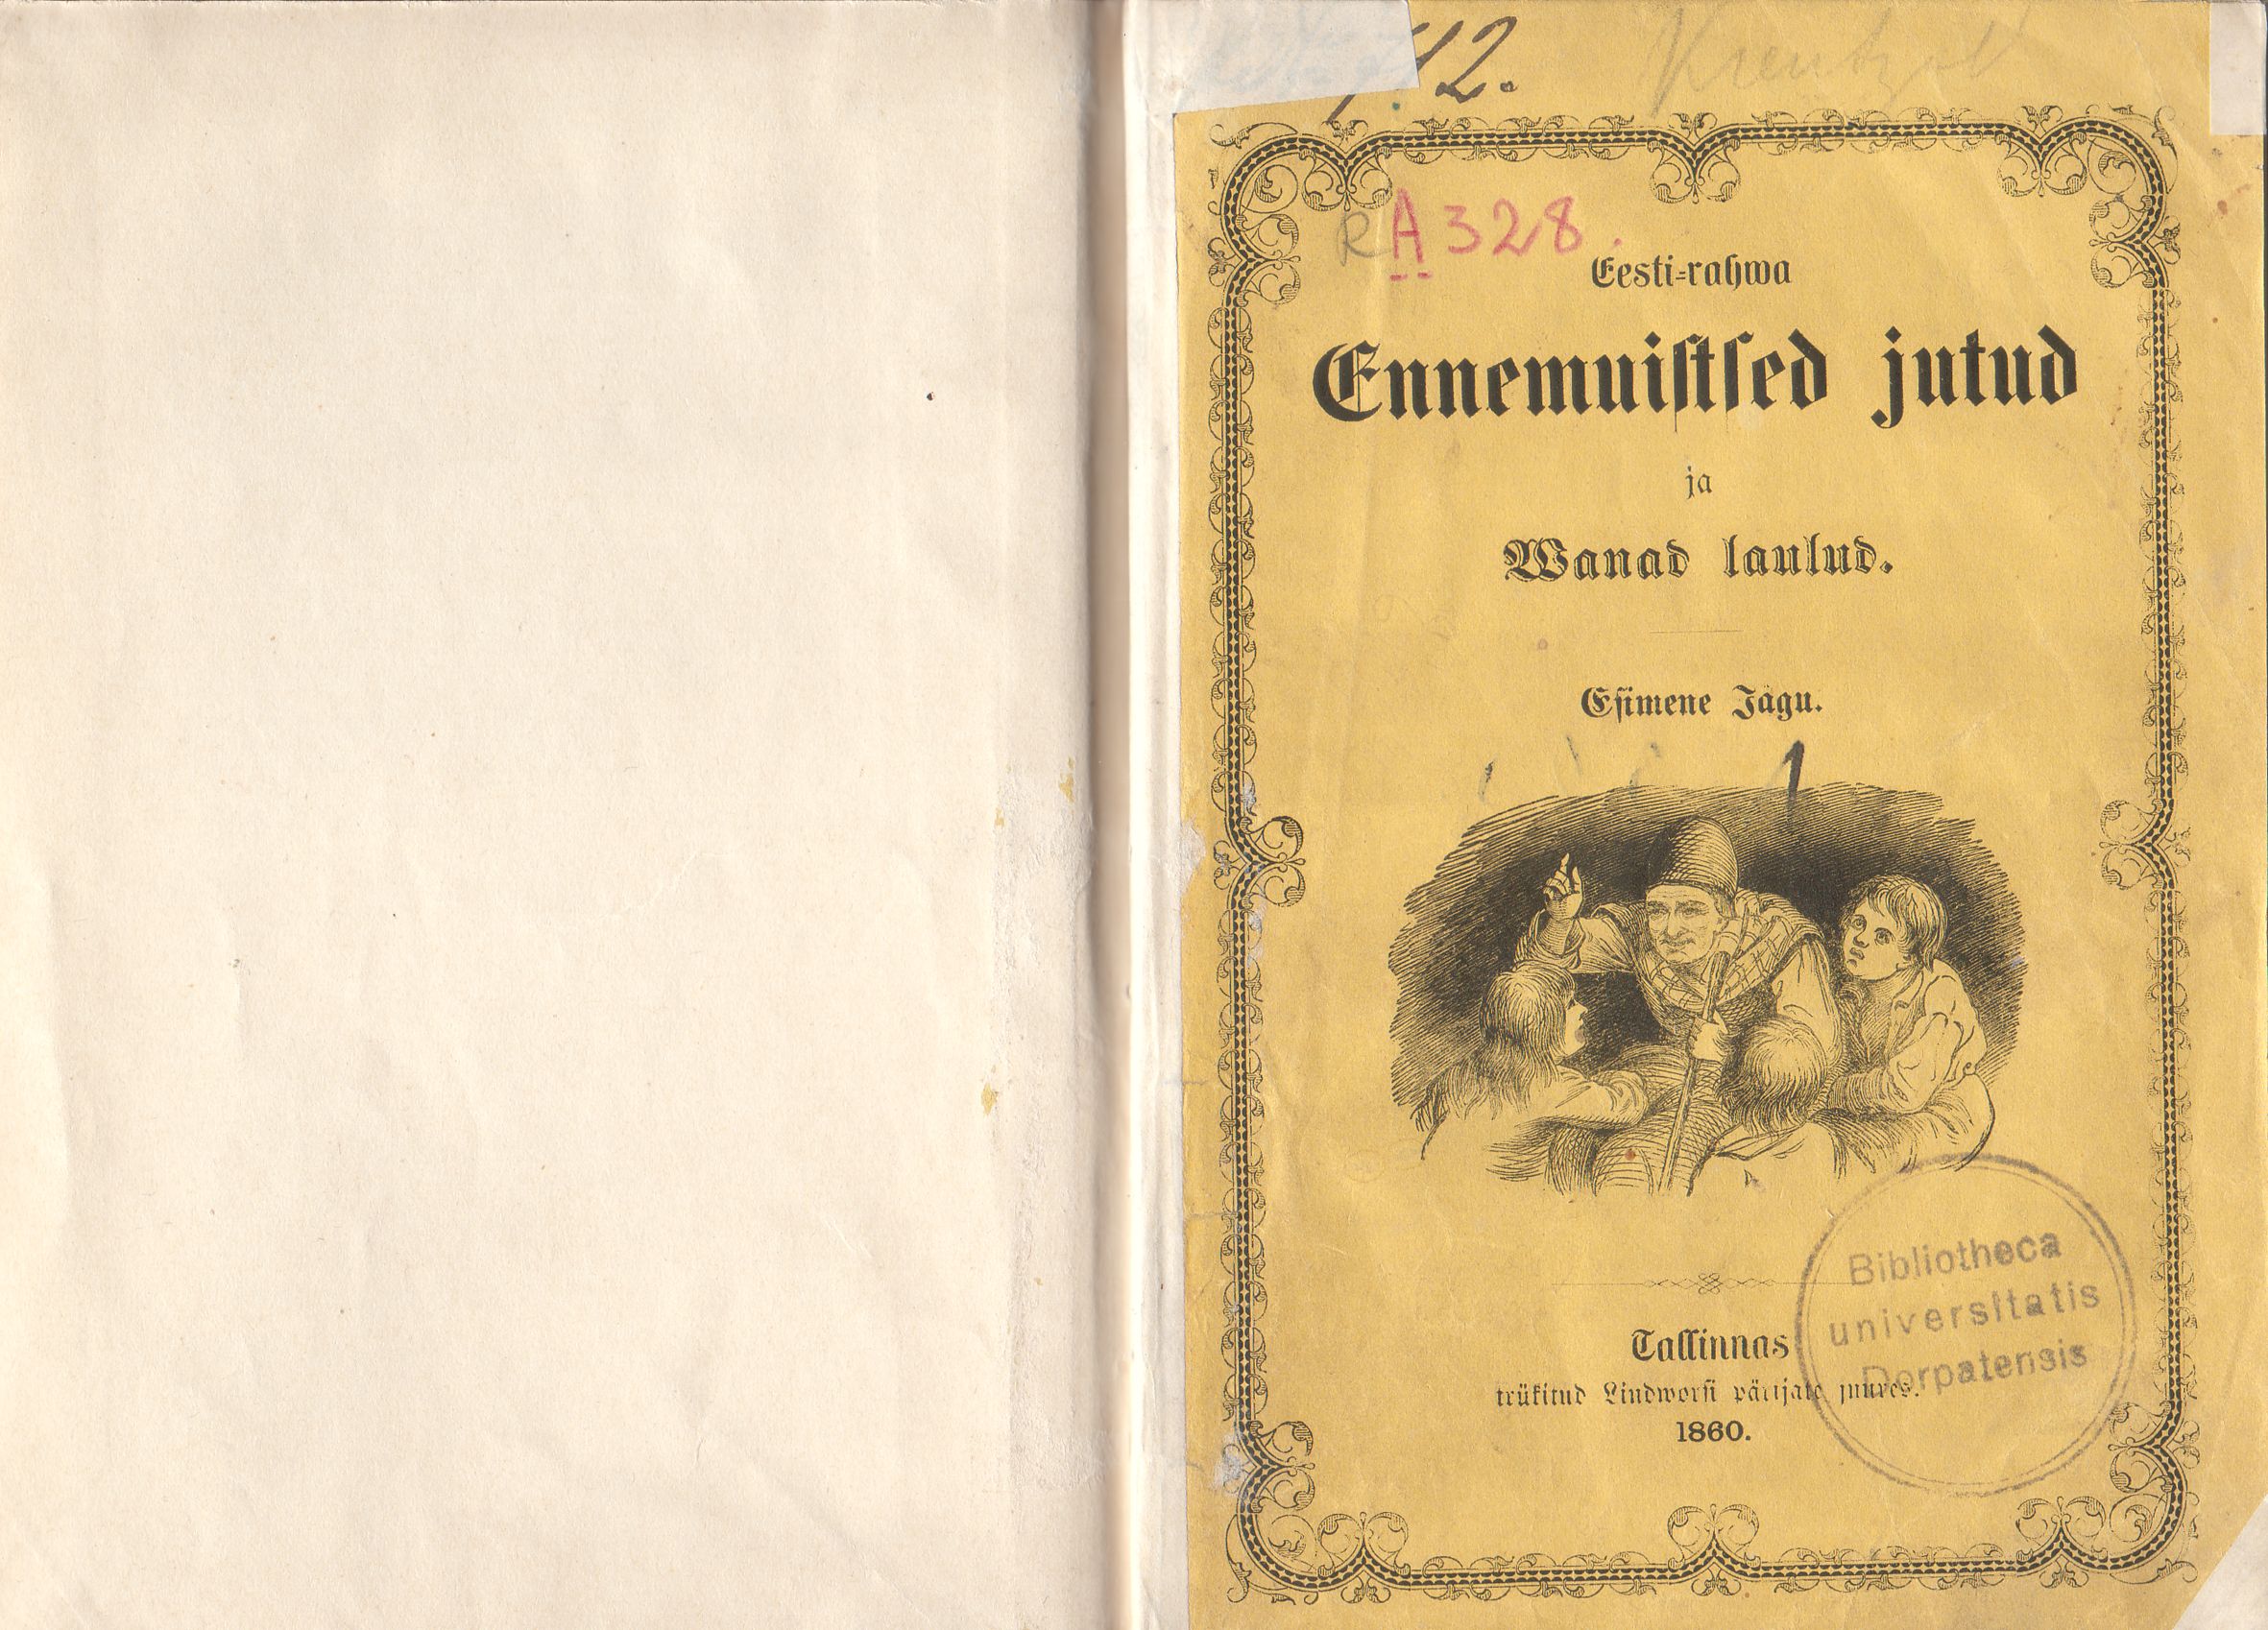 Eesti rahva ennemuistsed jutud ja vanad laulud (1860) | 2. Vorderdeckel